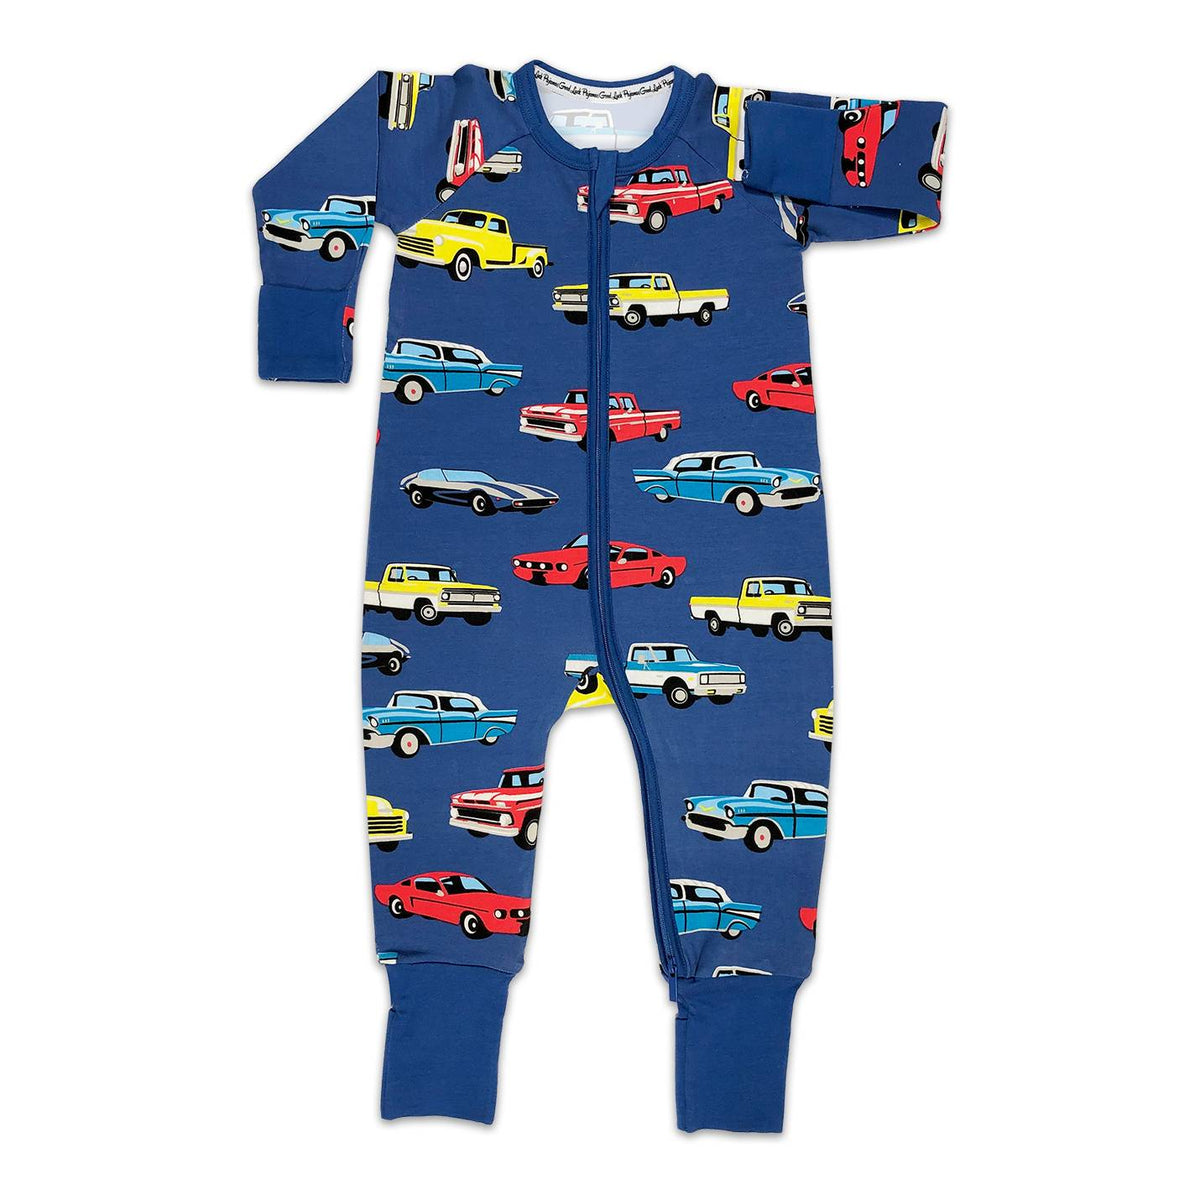 Cars & Trucks Baby Pajamas